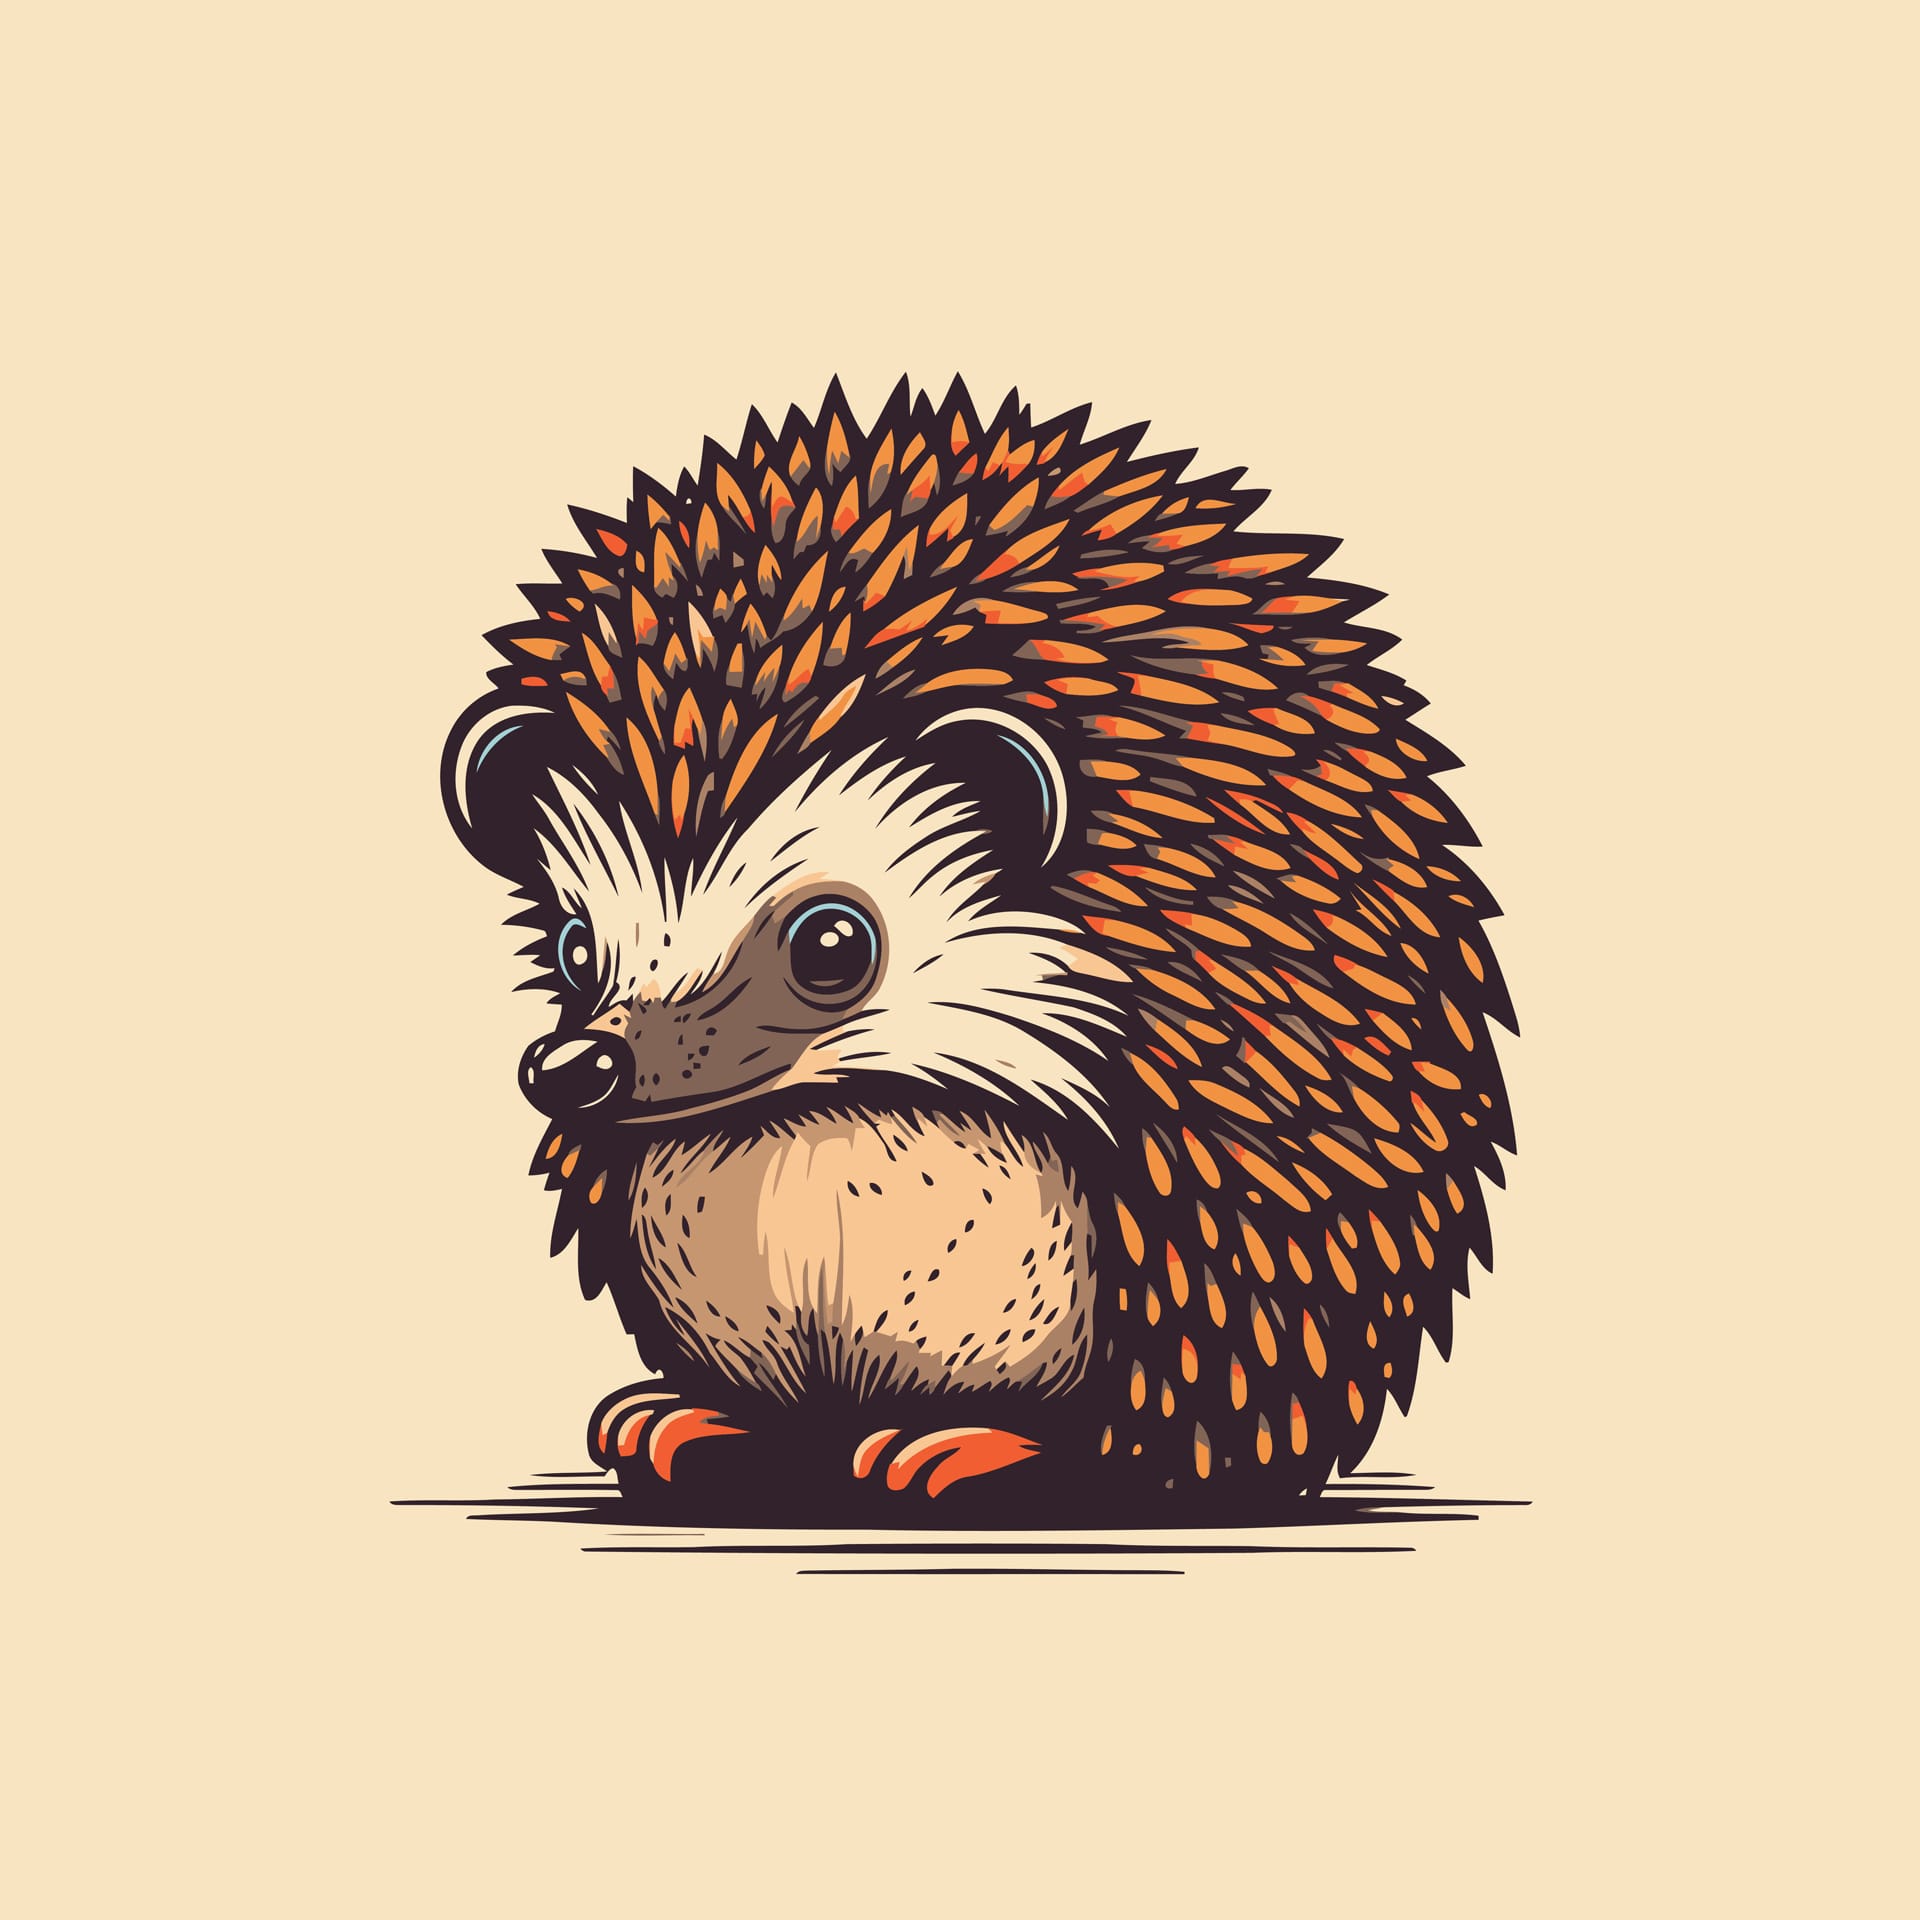 Hedgehog head logo design illustration isolated cute cartoon hedgehog image